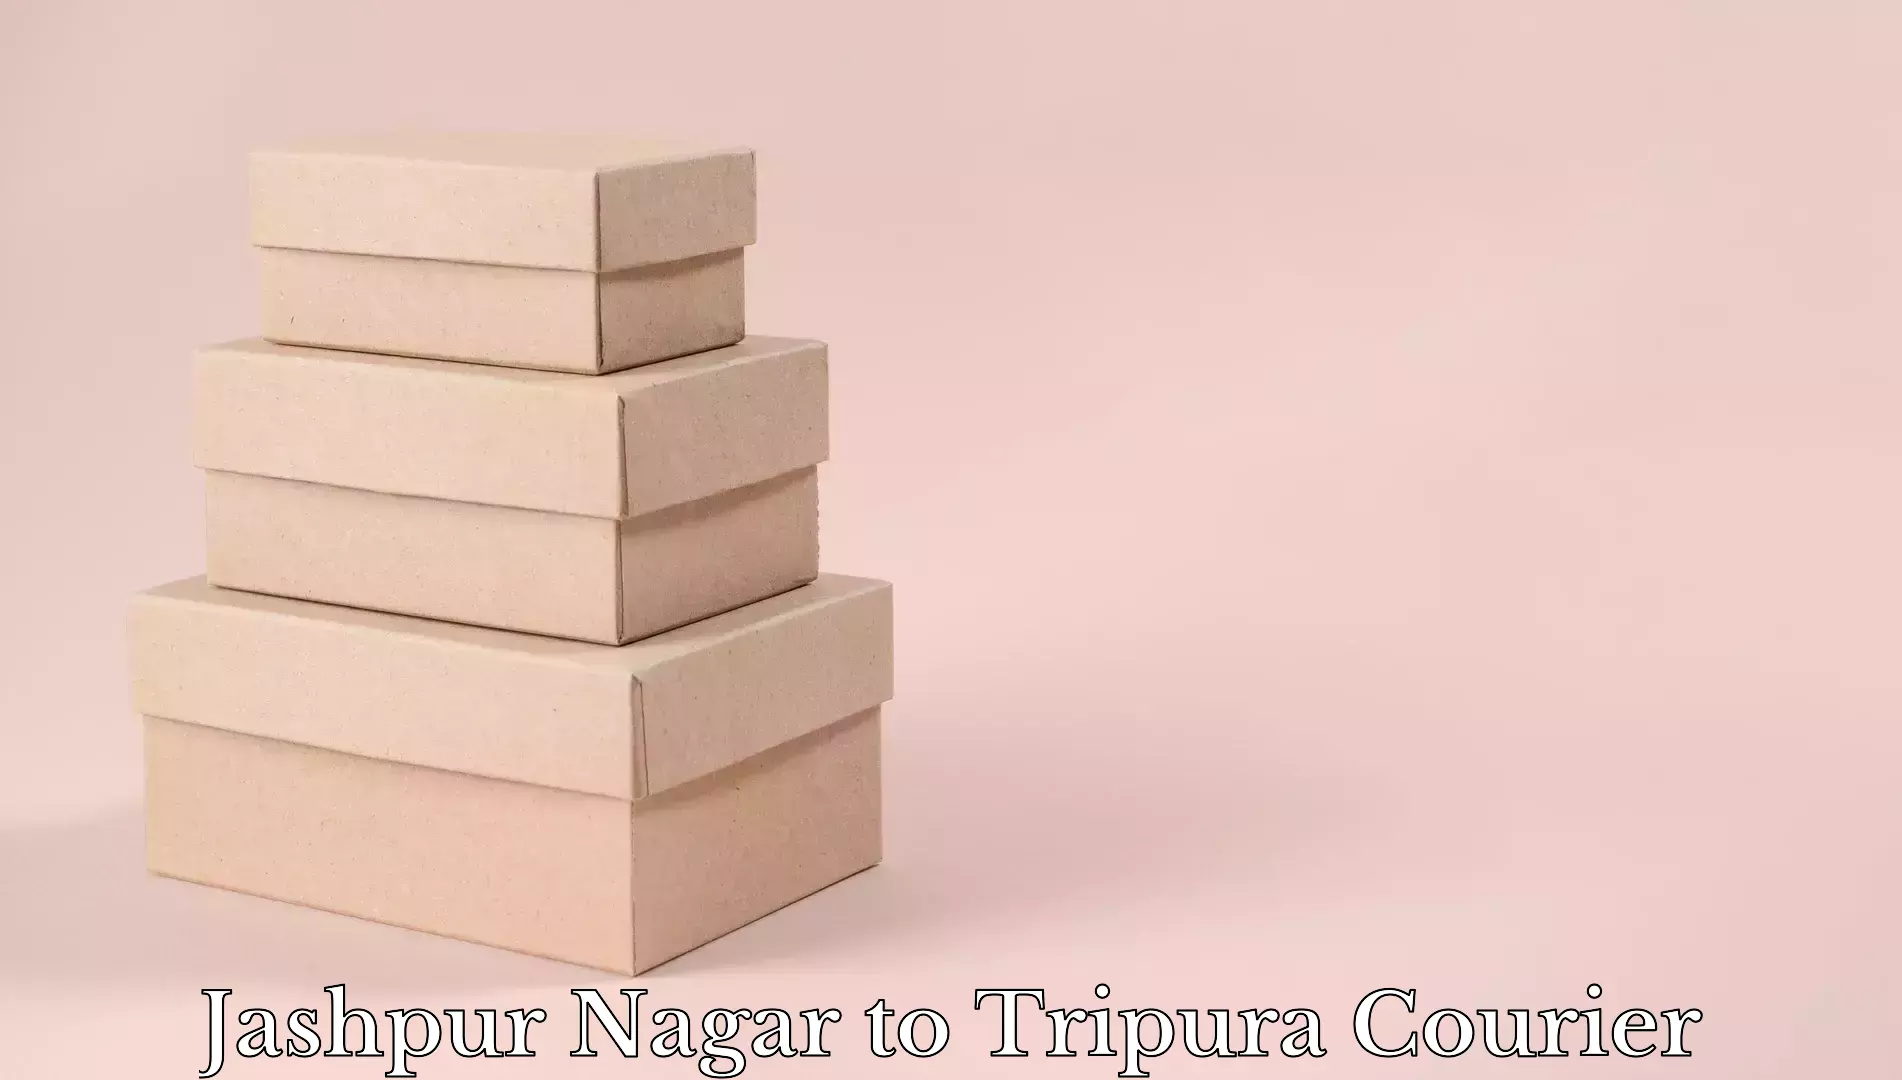 Luggage transport tips Jashpur Nagar to Dharmanagar